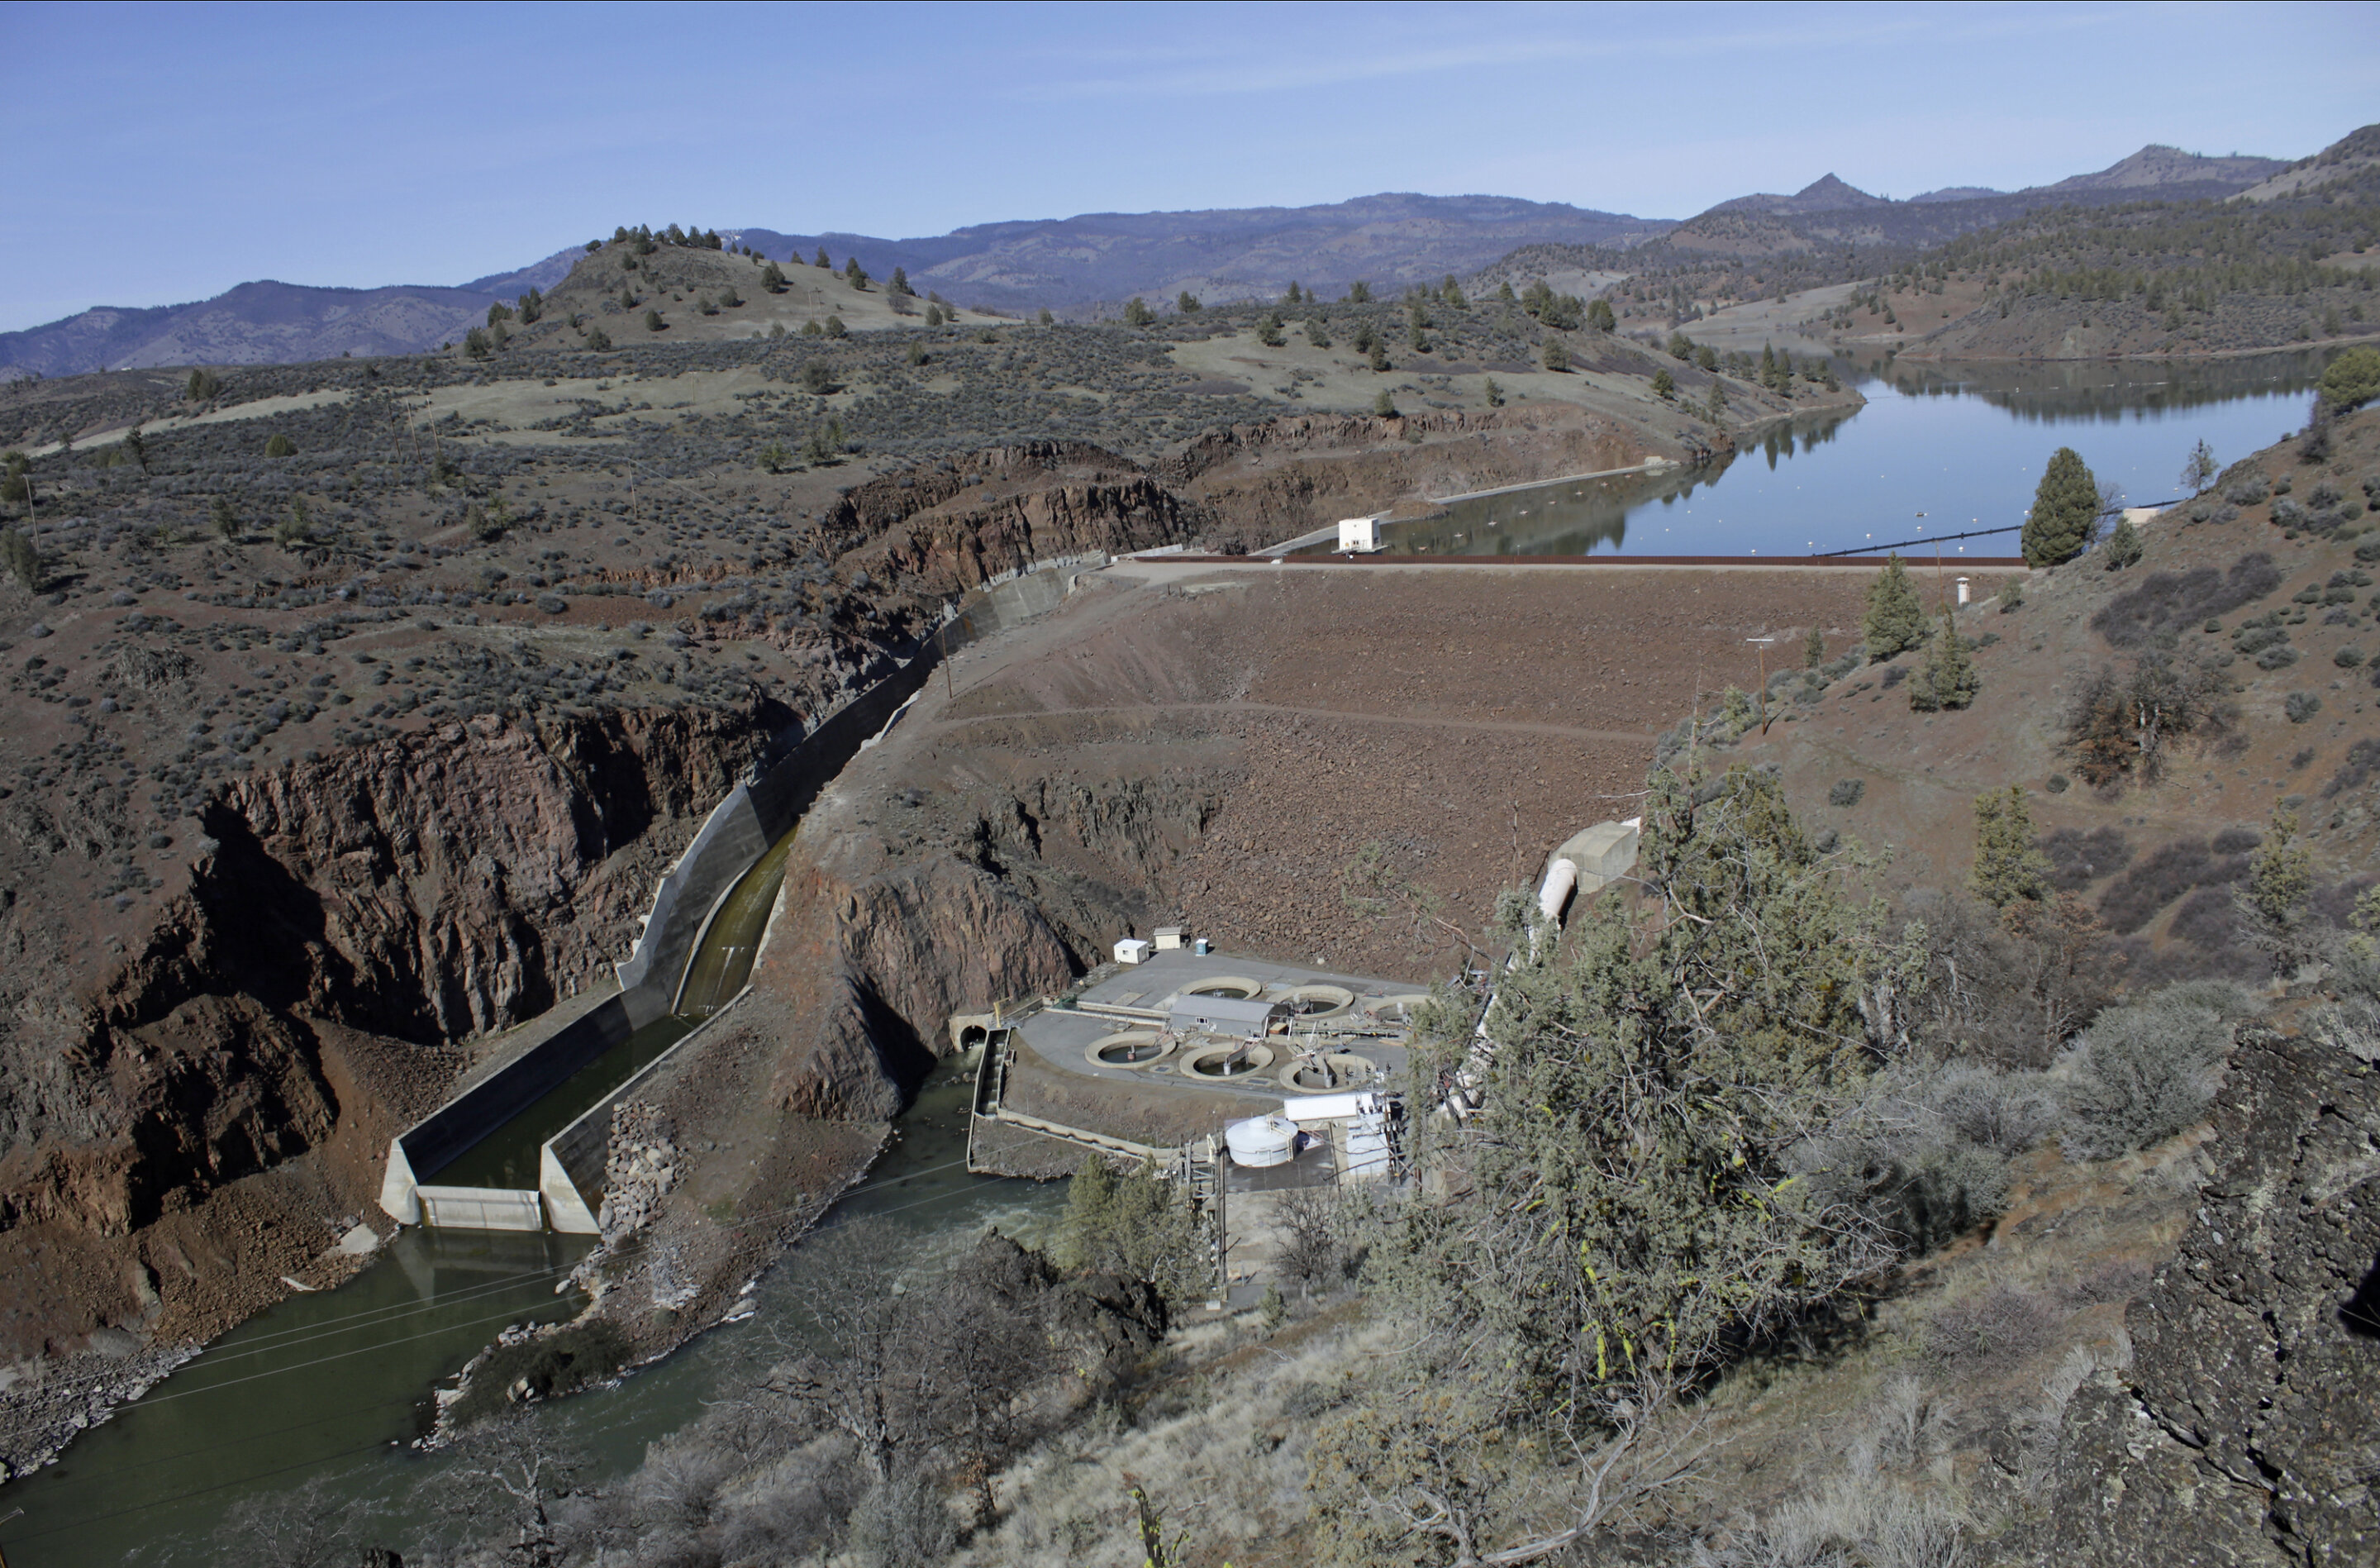 #Major hurdle cleared in plan to demolish 4 California dams